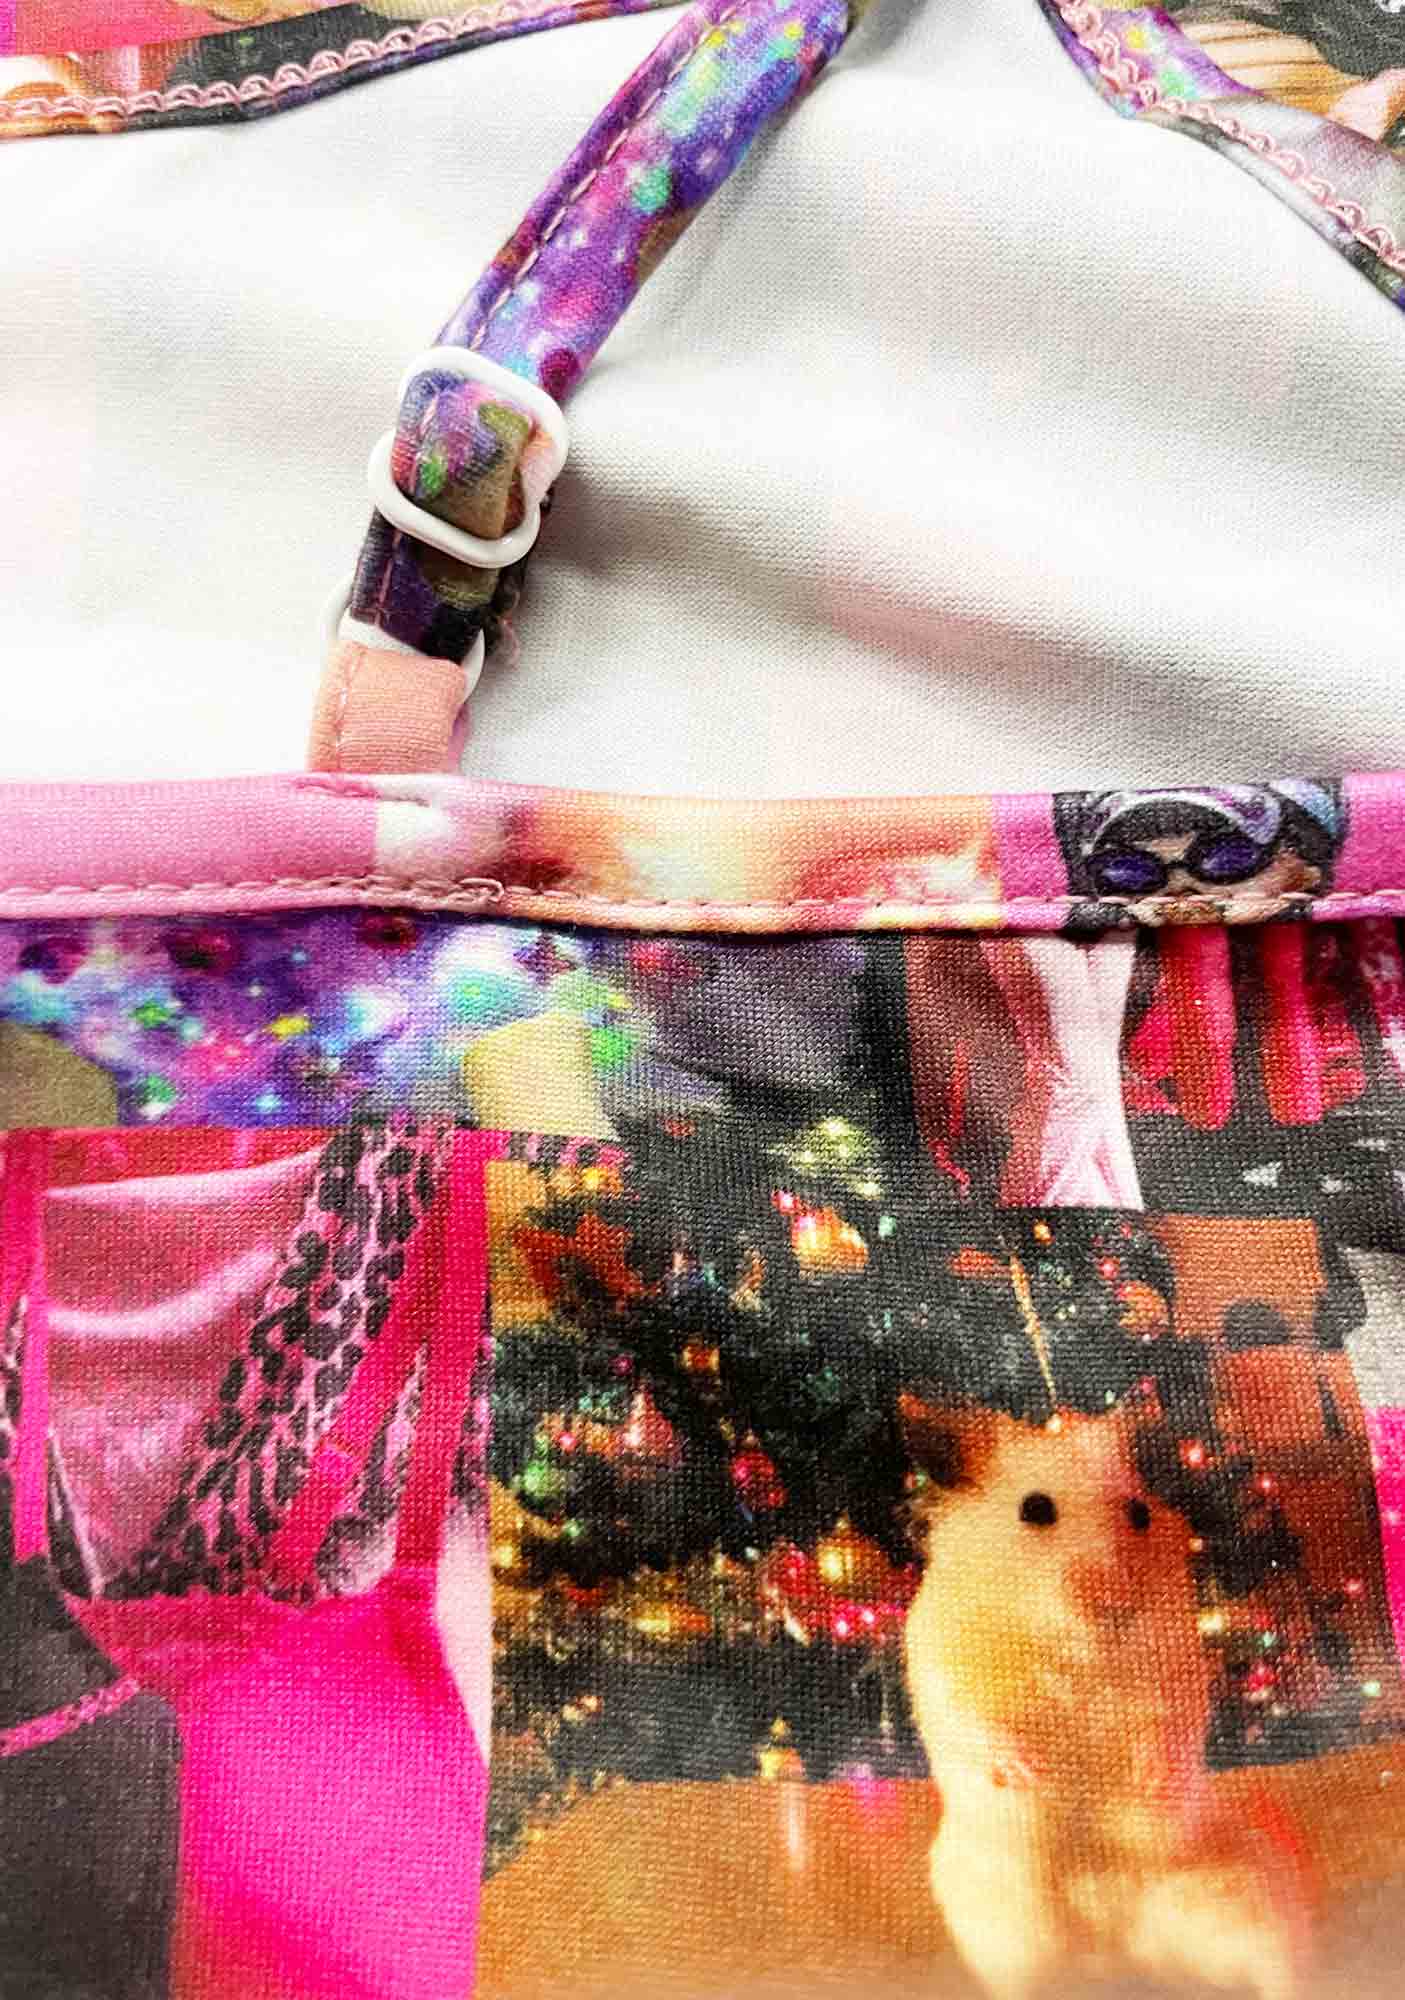 Pink Collage Y2K Cami Pajama Set